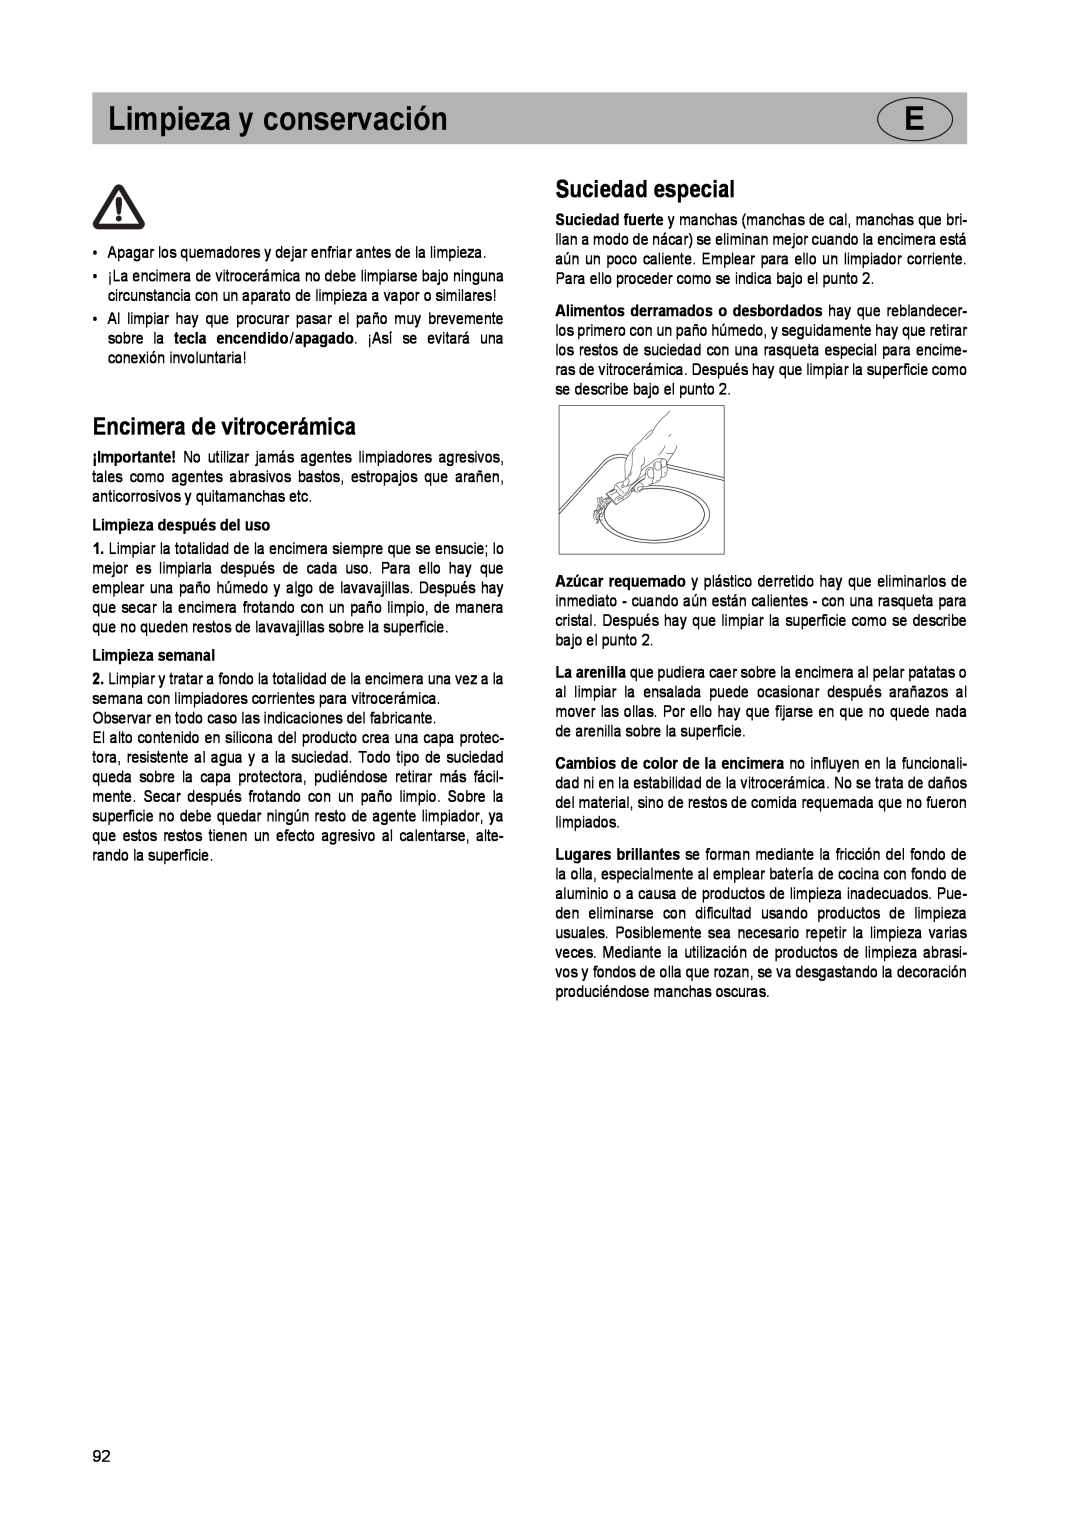 Smeg SE2931ID manual Limpieza y conservación, Encimera de vitrocerámica, Suciedad especial, Limpieza después del uso 